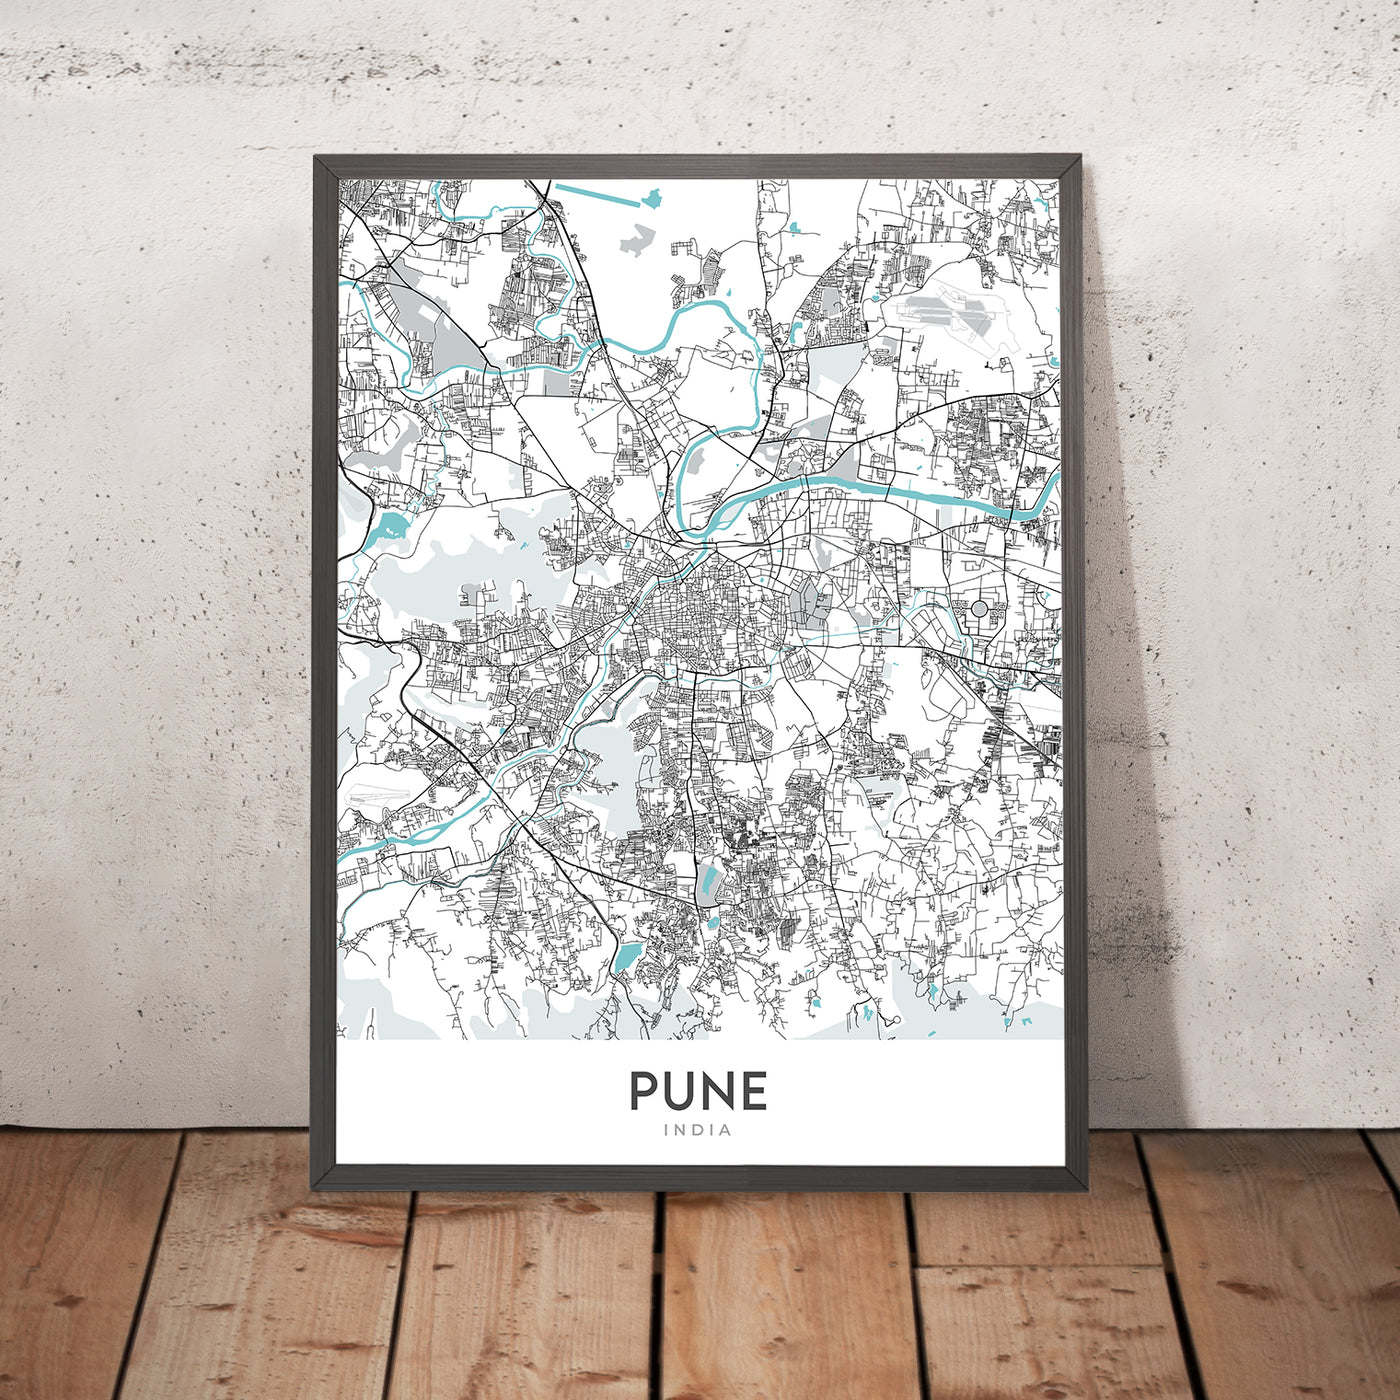 Moderner Stadtplan von Pune, Indien: Shivajinagar, Koregaon Park, Aga Khan Palace, FC Road, Pashan Lake